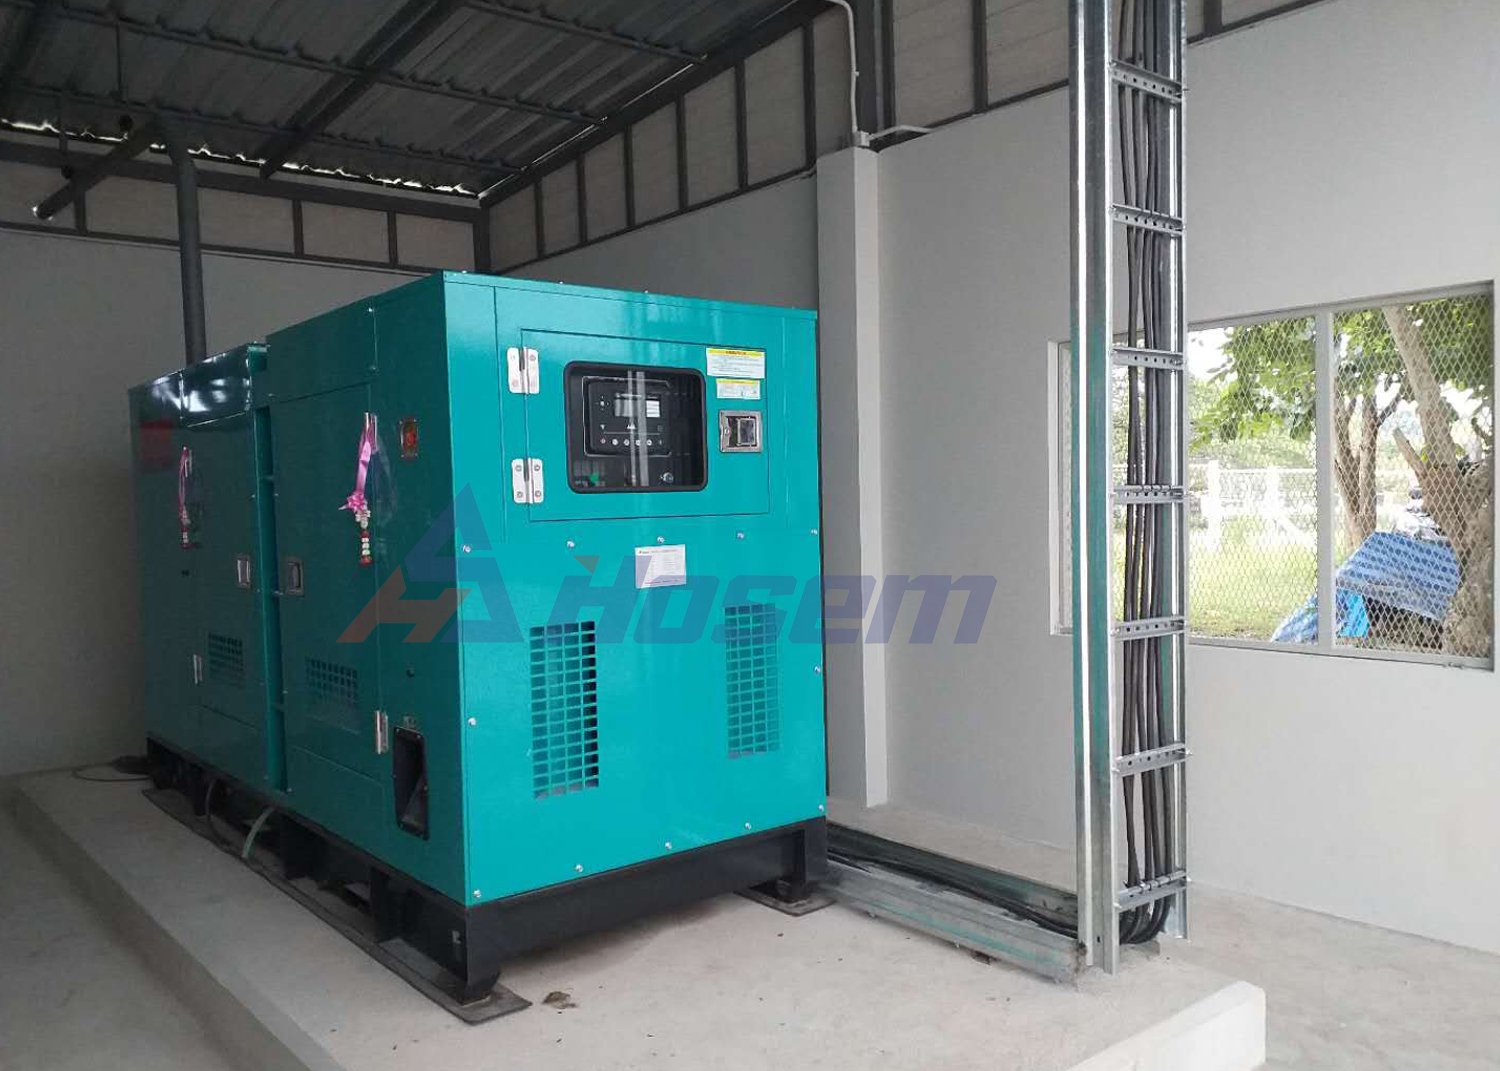 Hosem Power Diesel Generator Installation